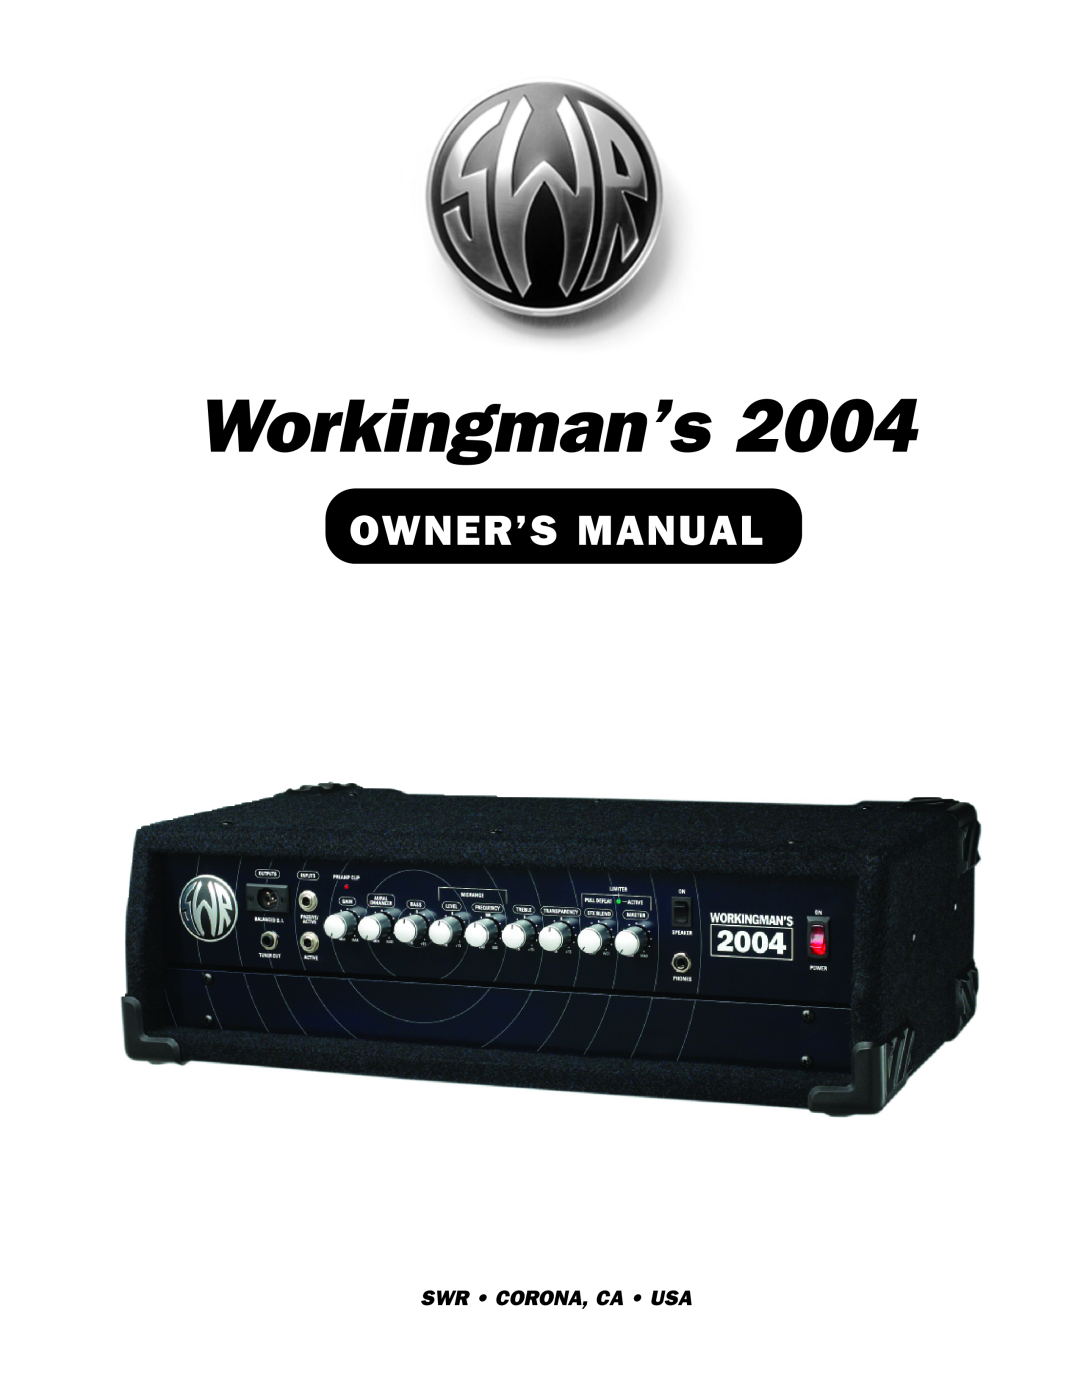 SWR Sound 2004 owner manual Workingman’s, Swr Corona, Ca Usa 